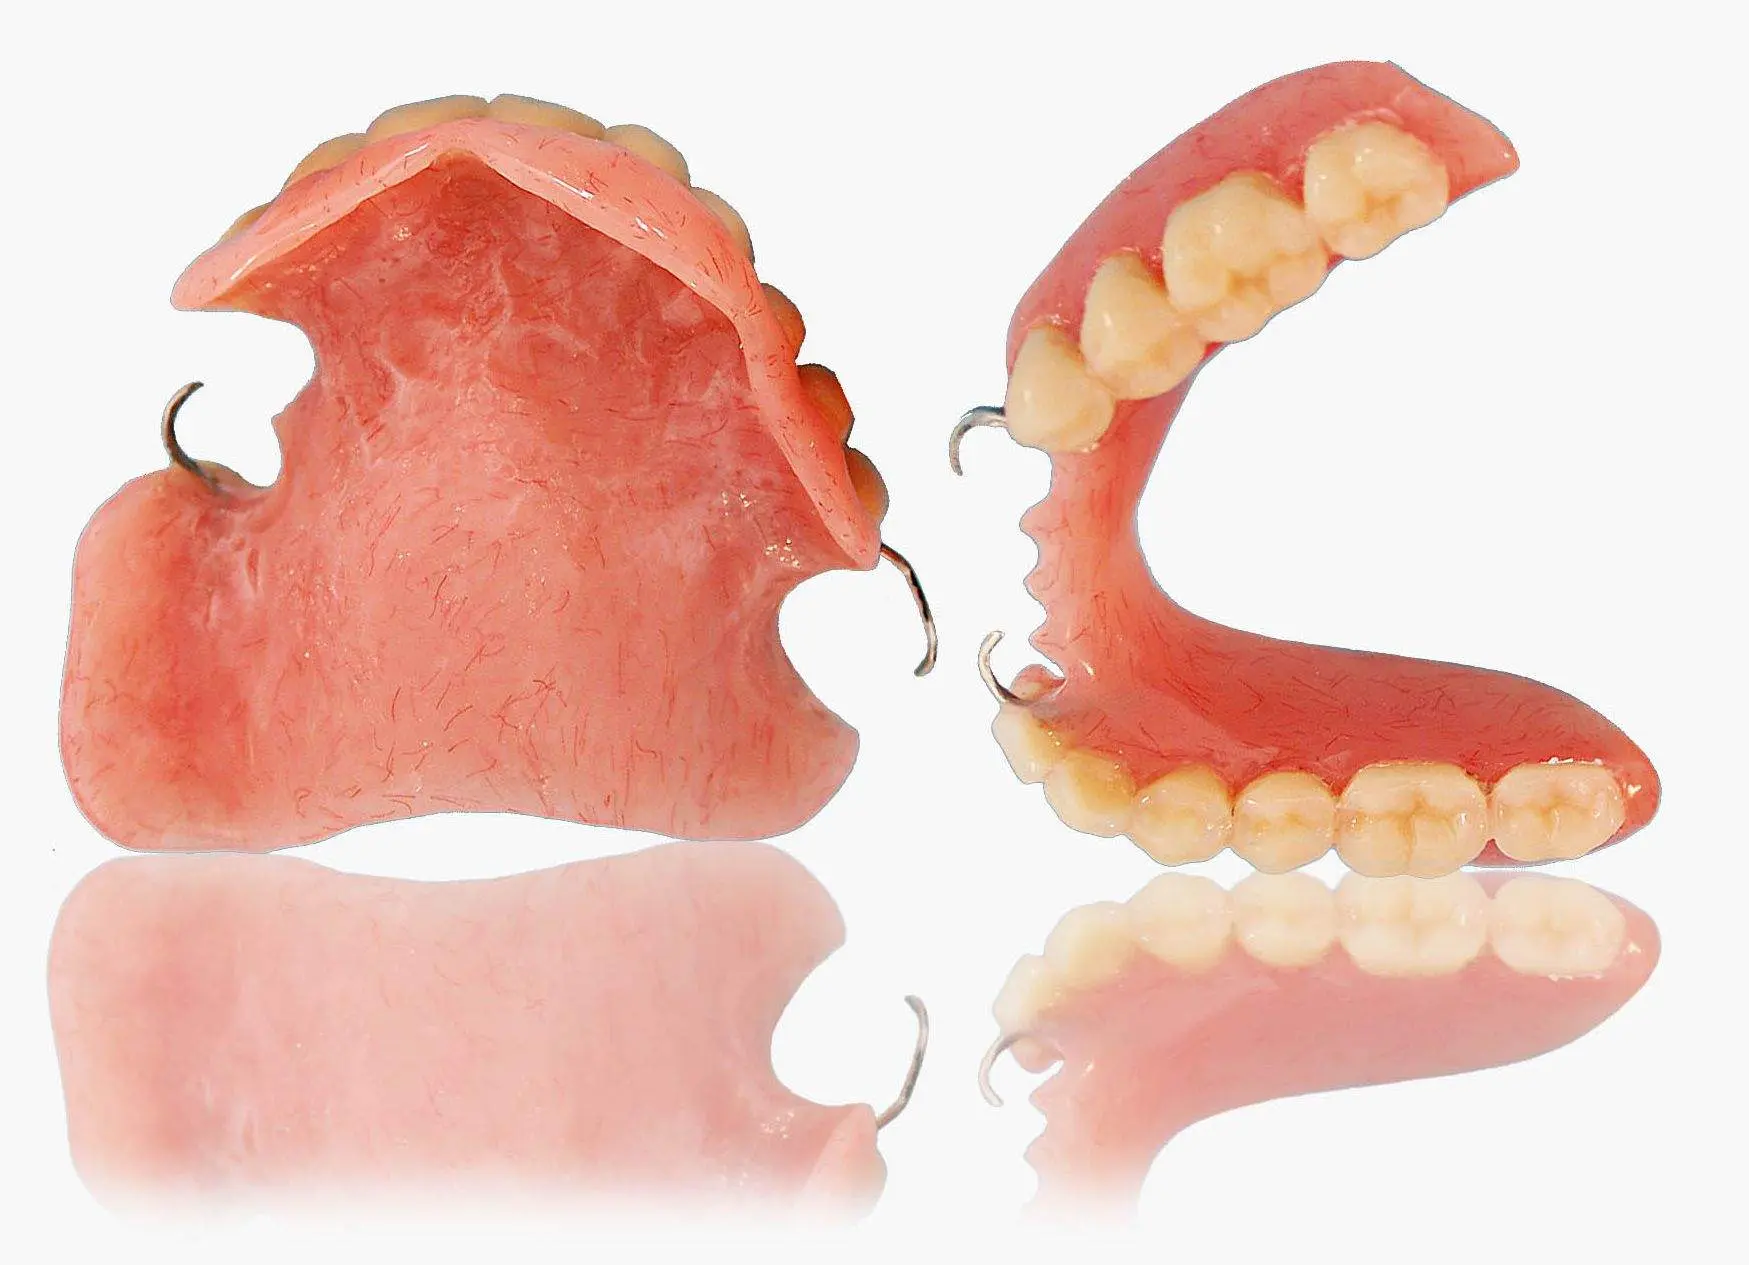 diente provisional removible - Qué es una prótesis provisional removible